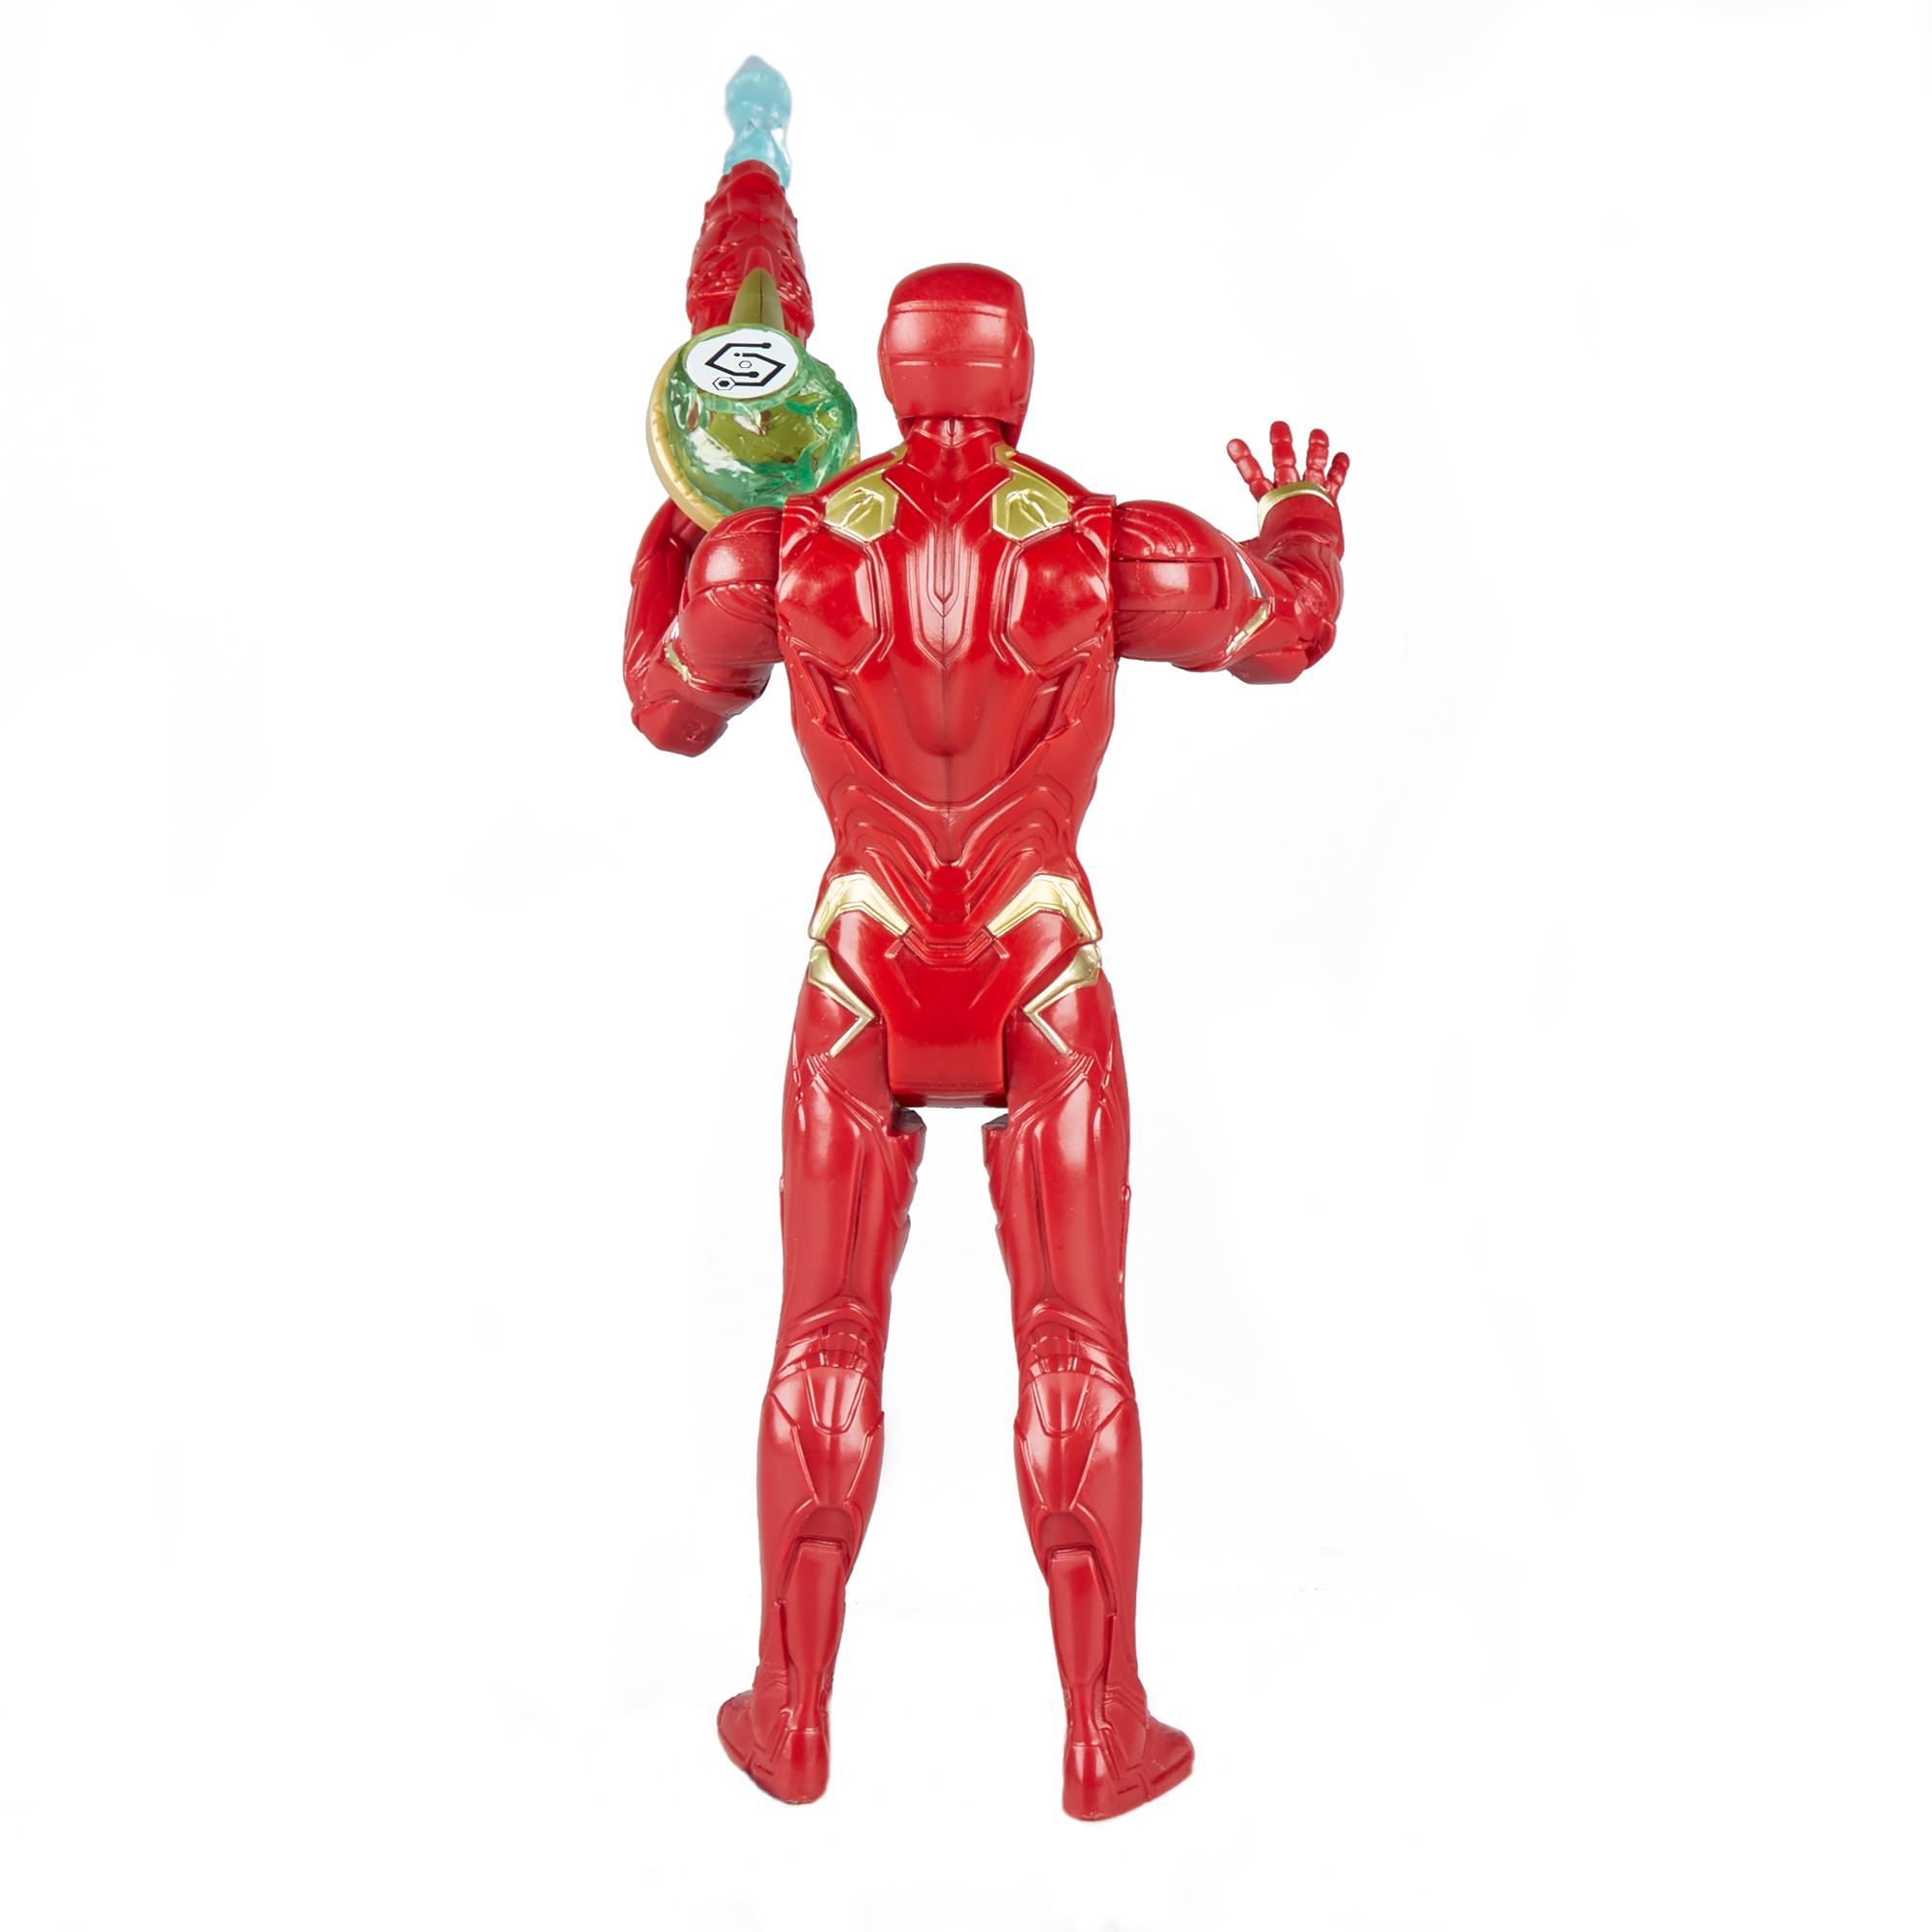 Фигурка Мстителя с камнем бесконечности - Железный человек, 15 см